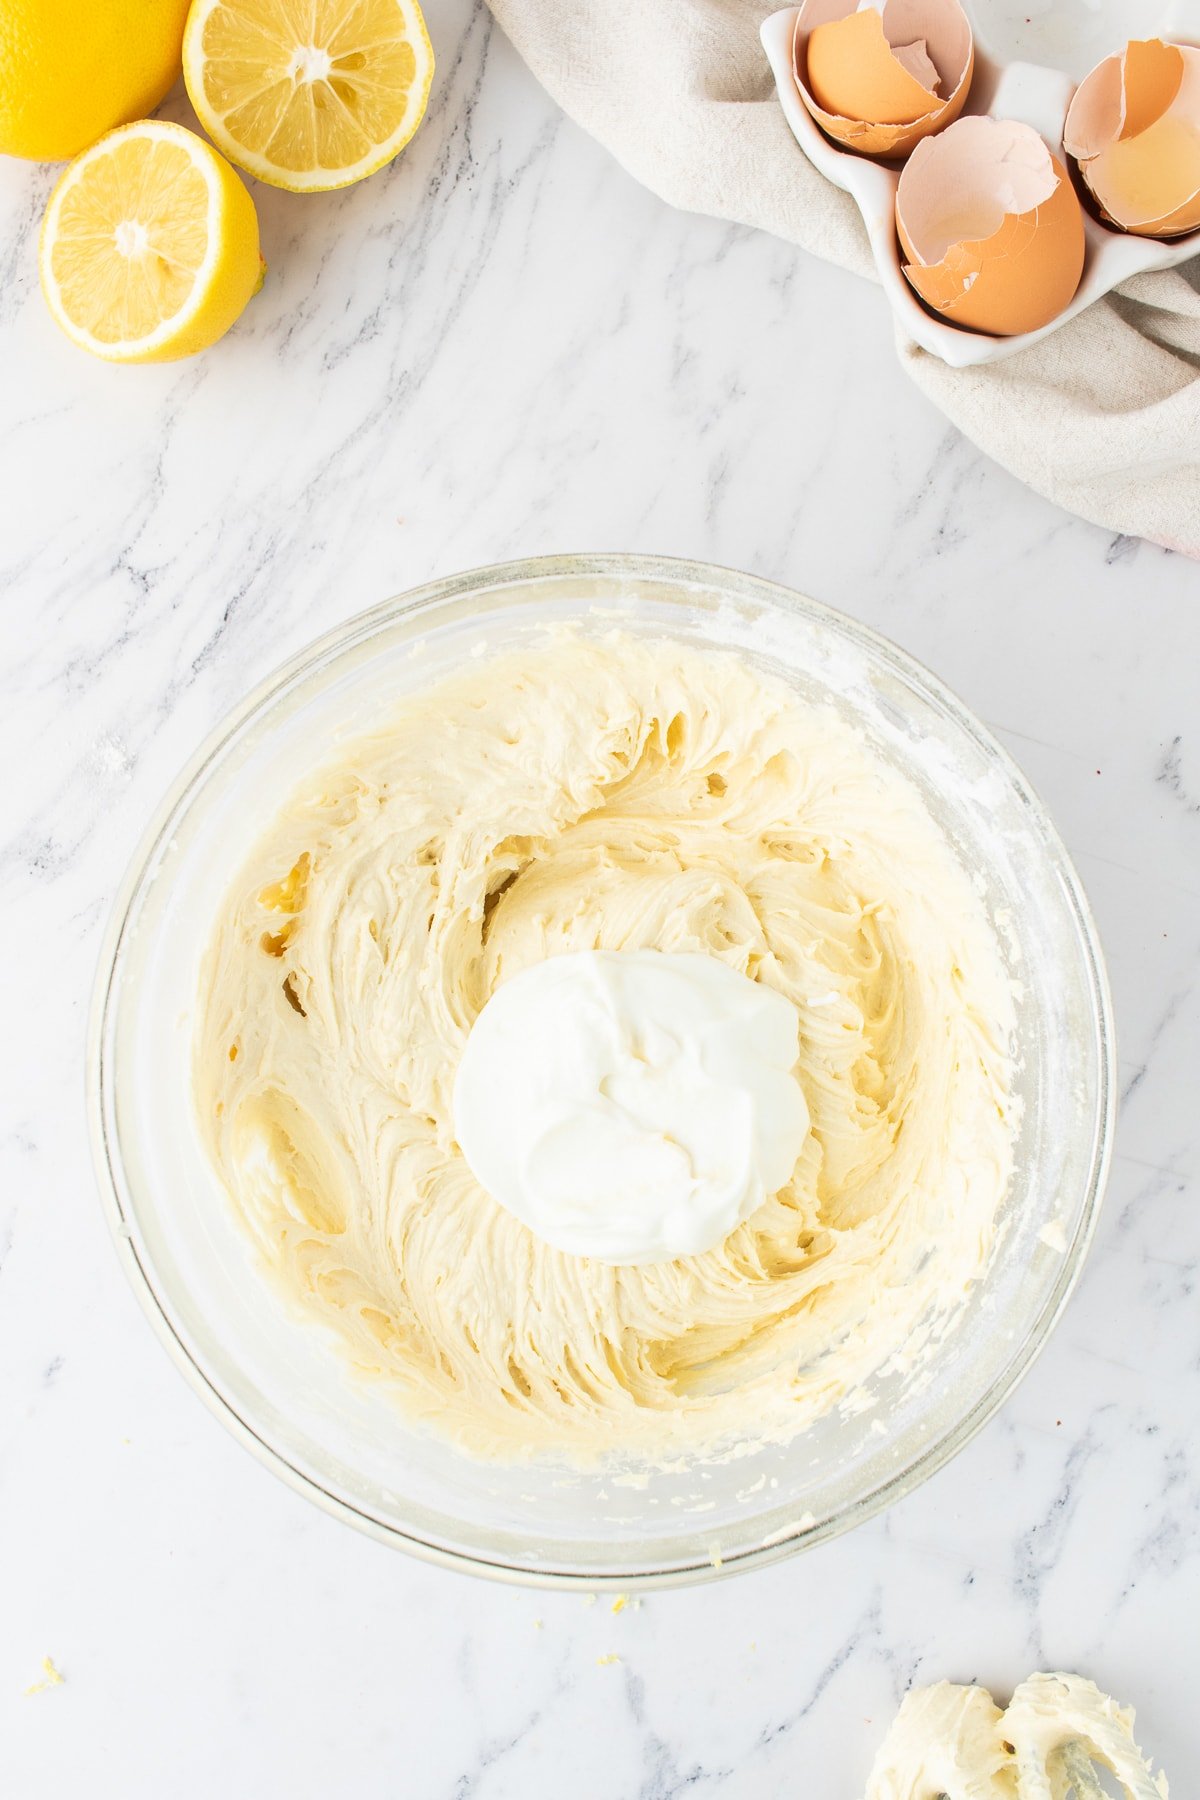 yogurt in mixing bowl with lemon pound cake batter